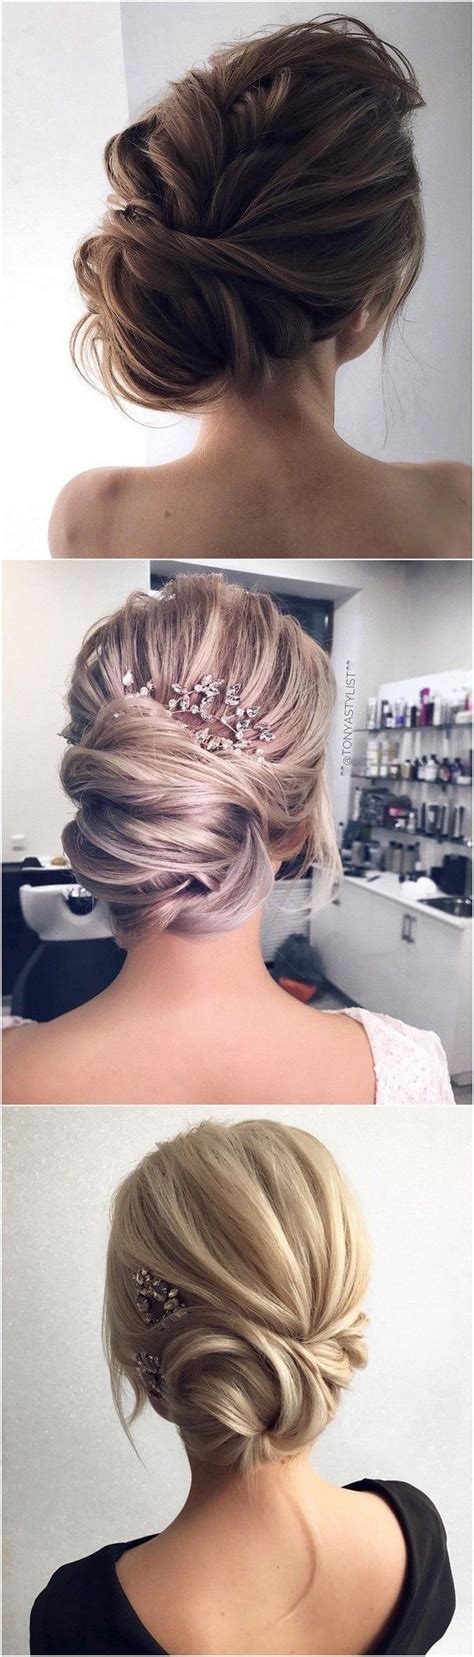 12 So Pretty Updo Wedding Hairstyles From TonyaPushkareva Emma